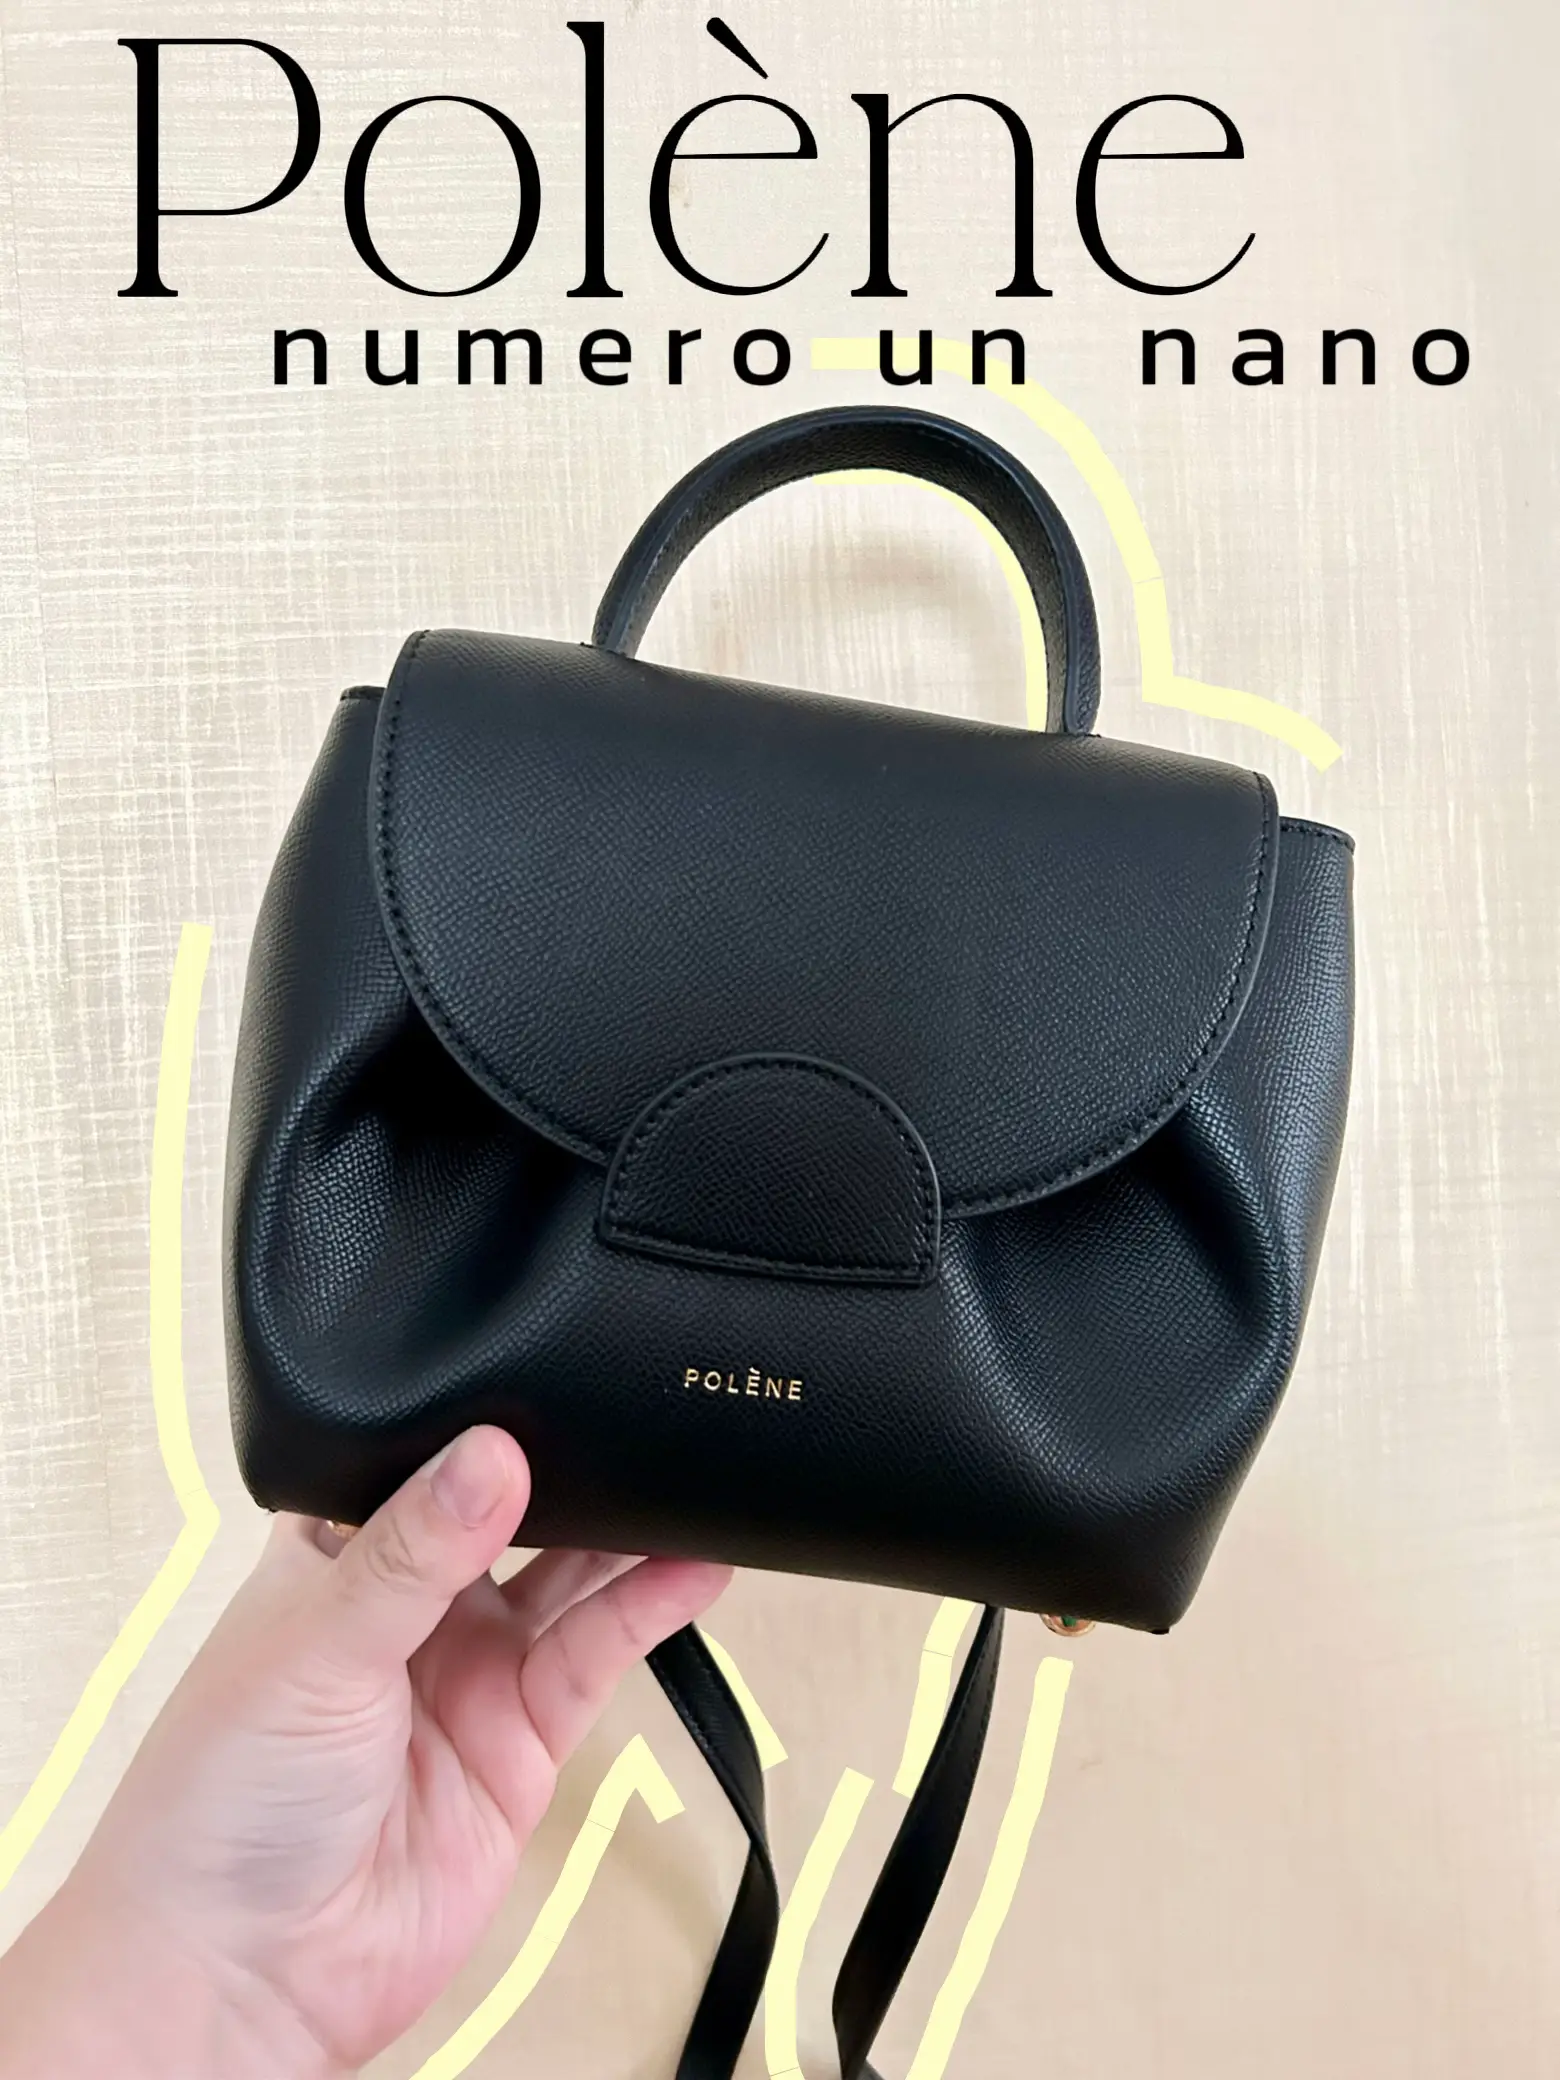 Polene Numero Un NANO vs MINI (design, size, weight, what fits